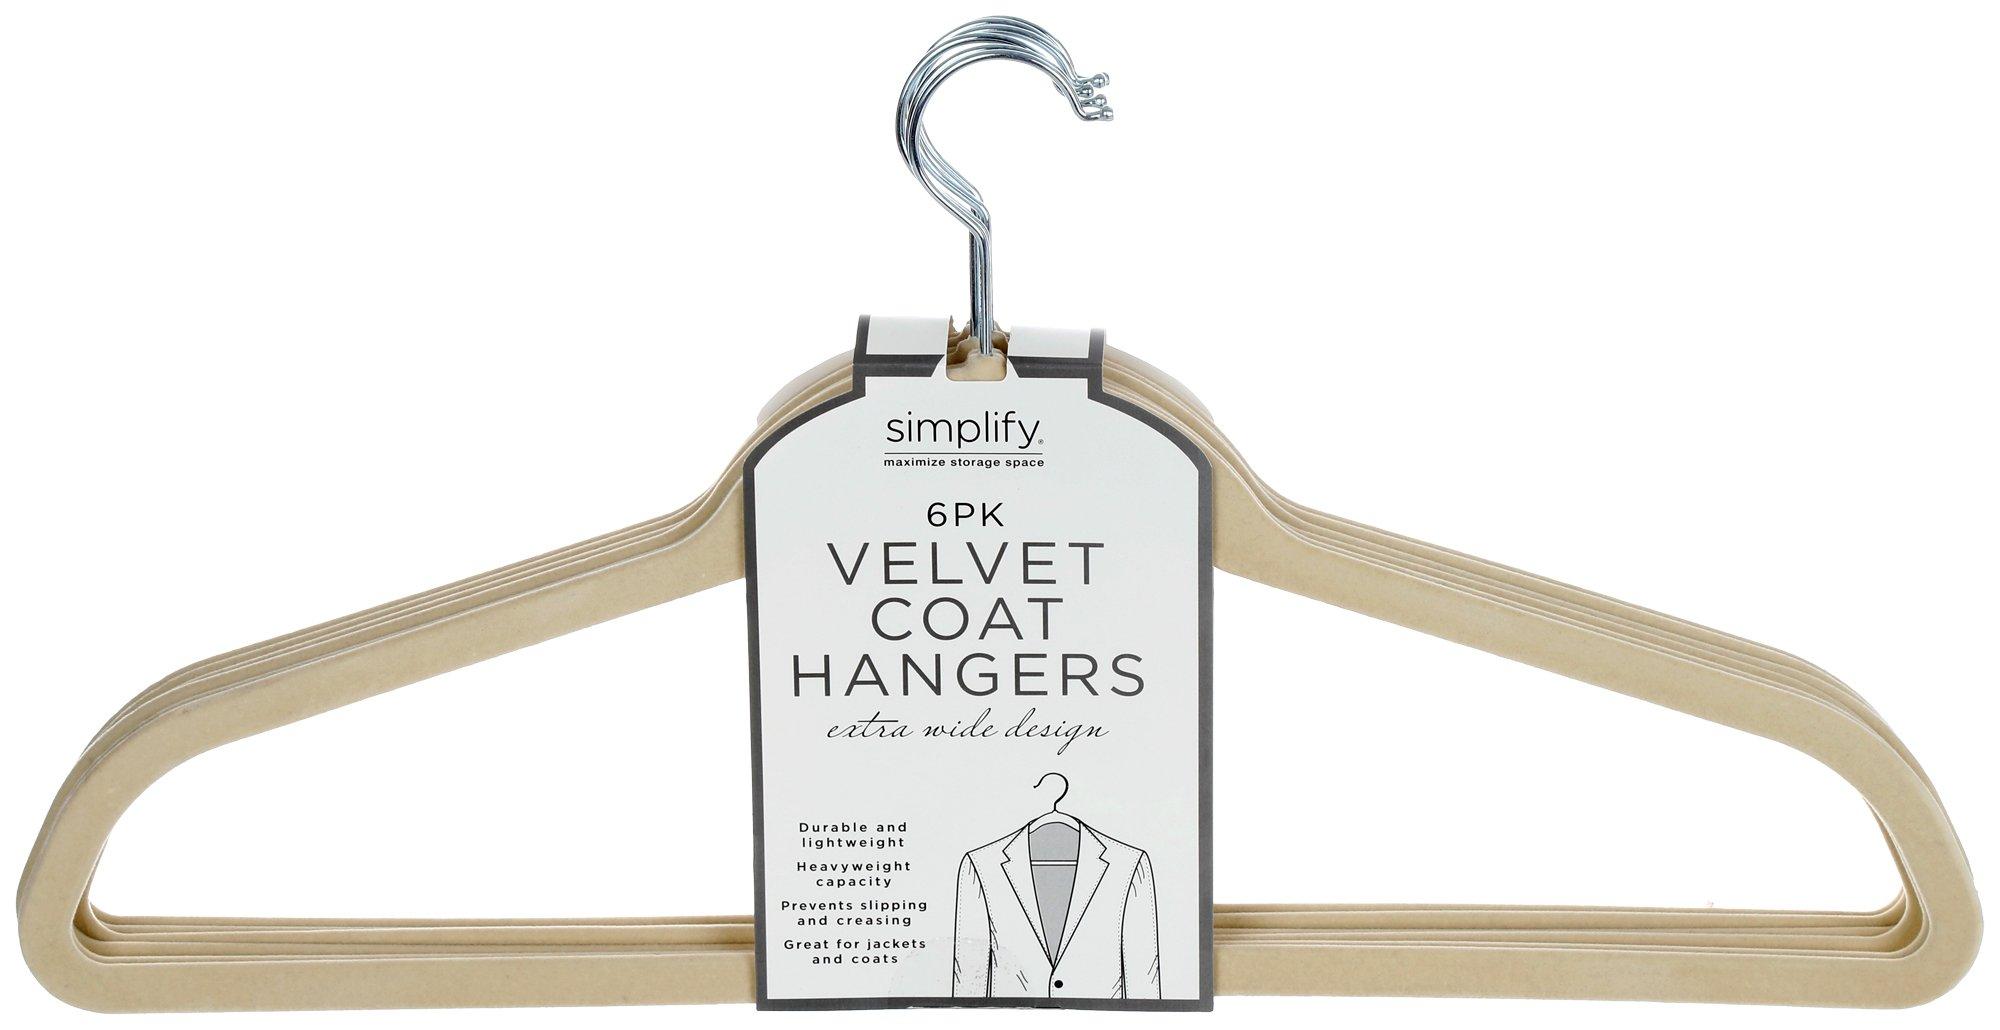 6 Pk Velvet Coat Hangers